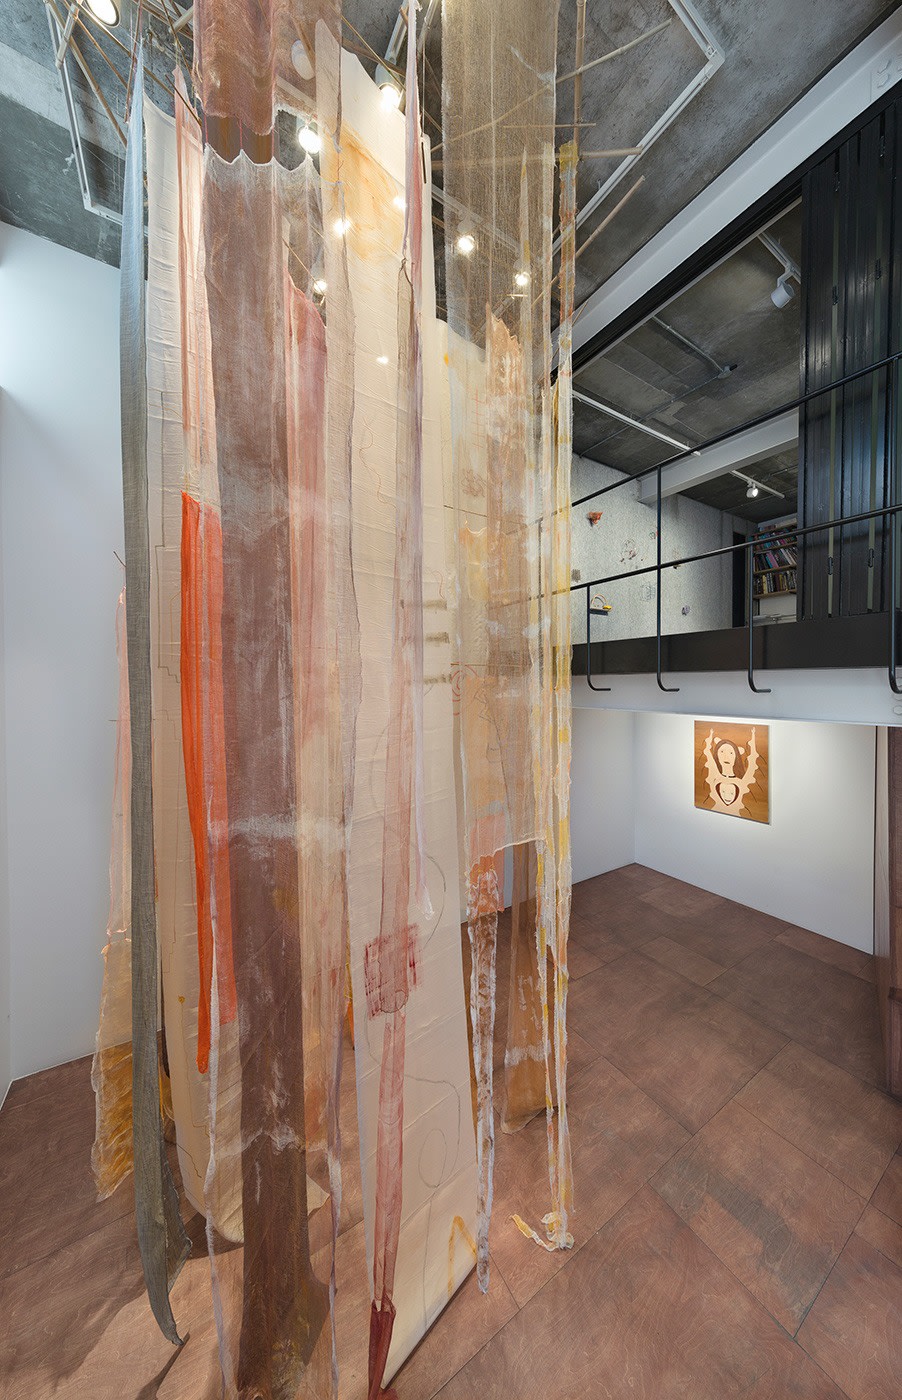 Cecilia Vicu&ntilde;a:&nbsp;Quipu Girok (Knot Record), Installation view, Seoul